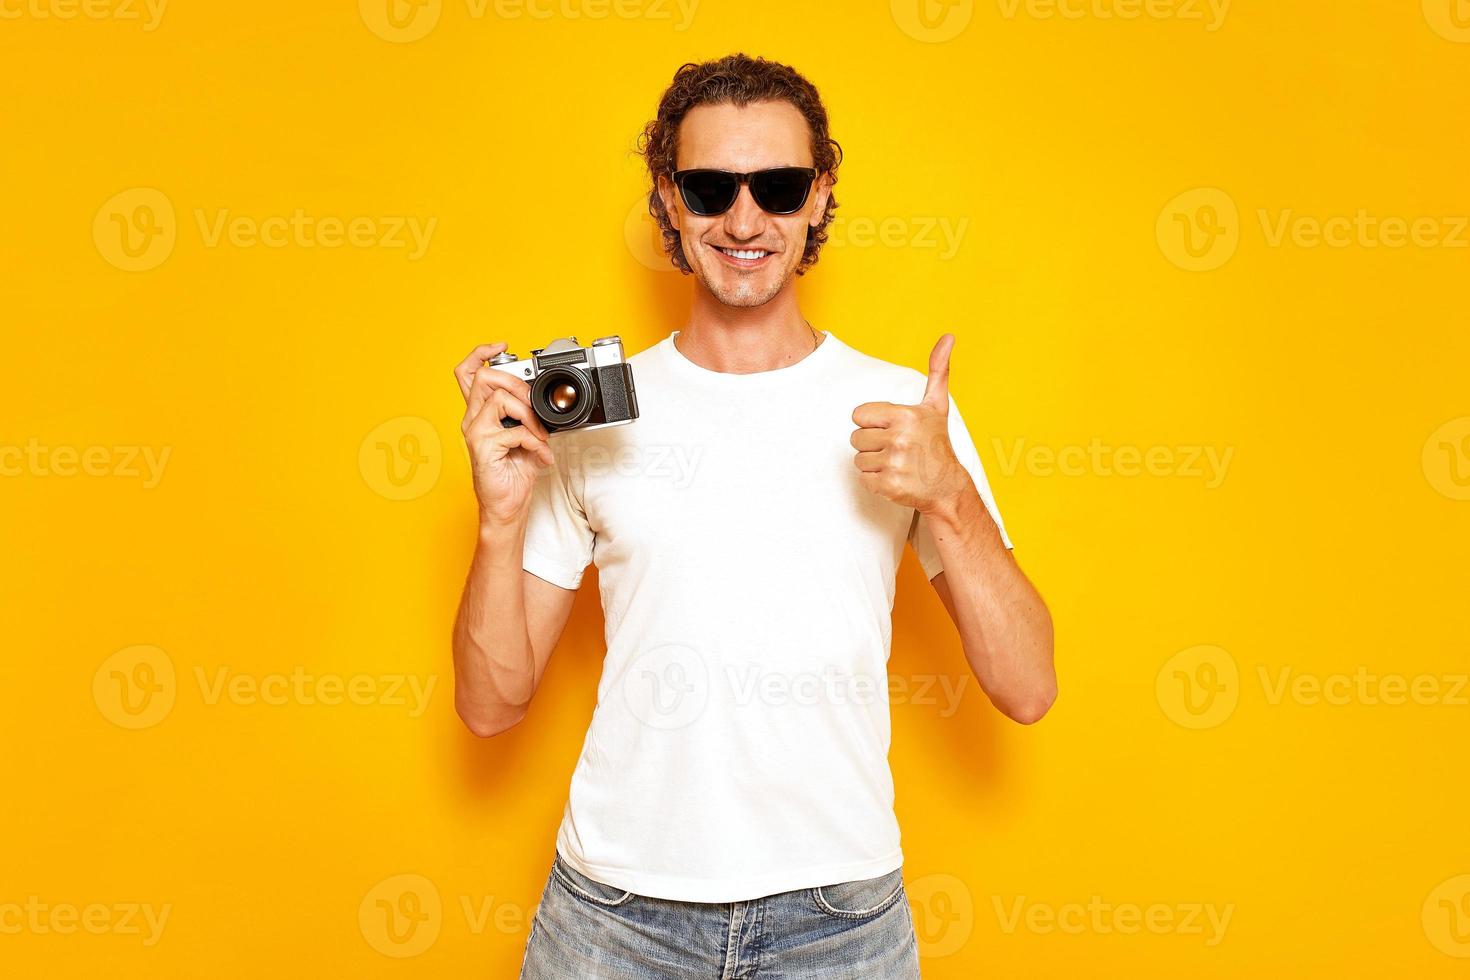 fotógrafo masculino con cámara retro en la mano da un pulgar hacia arriba vestido con ropa informal, camiseta blanca, jeans, gafas de sol aisladas en una pared amarilla del estudio. concepto - gente, creatividad, tecnología foto